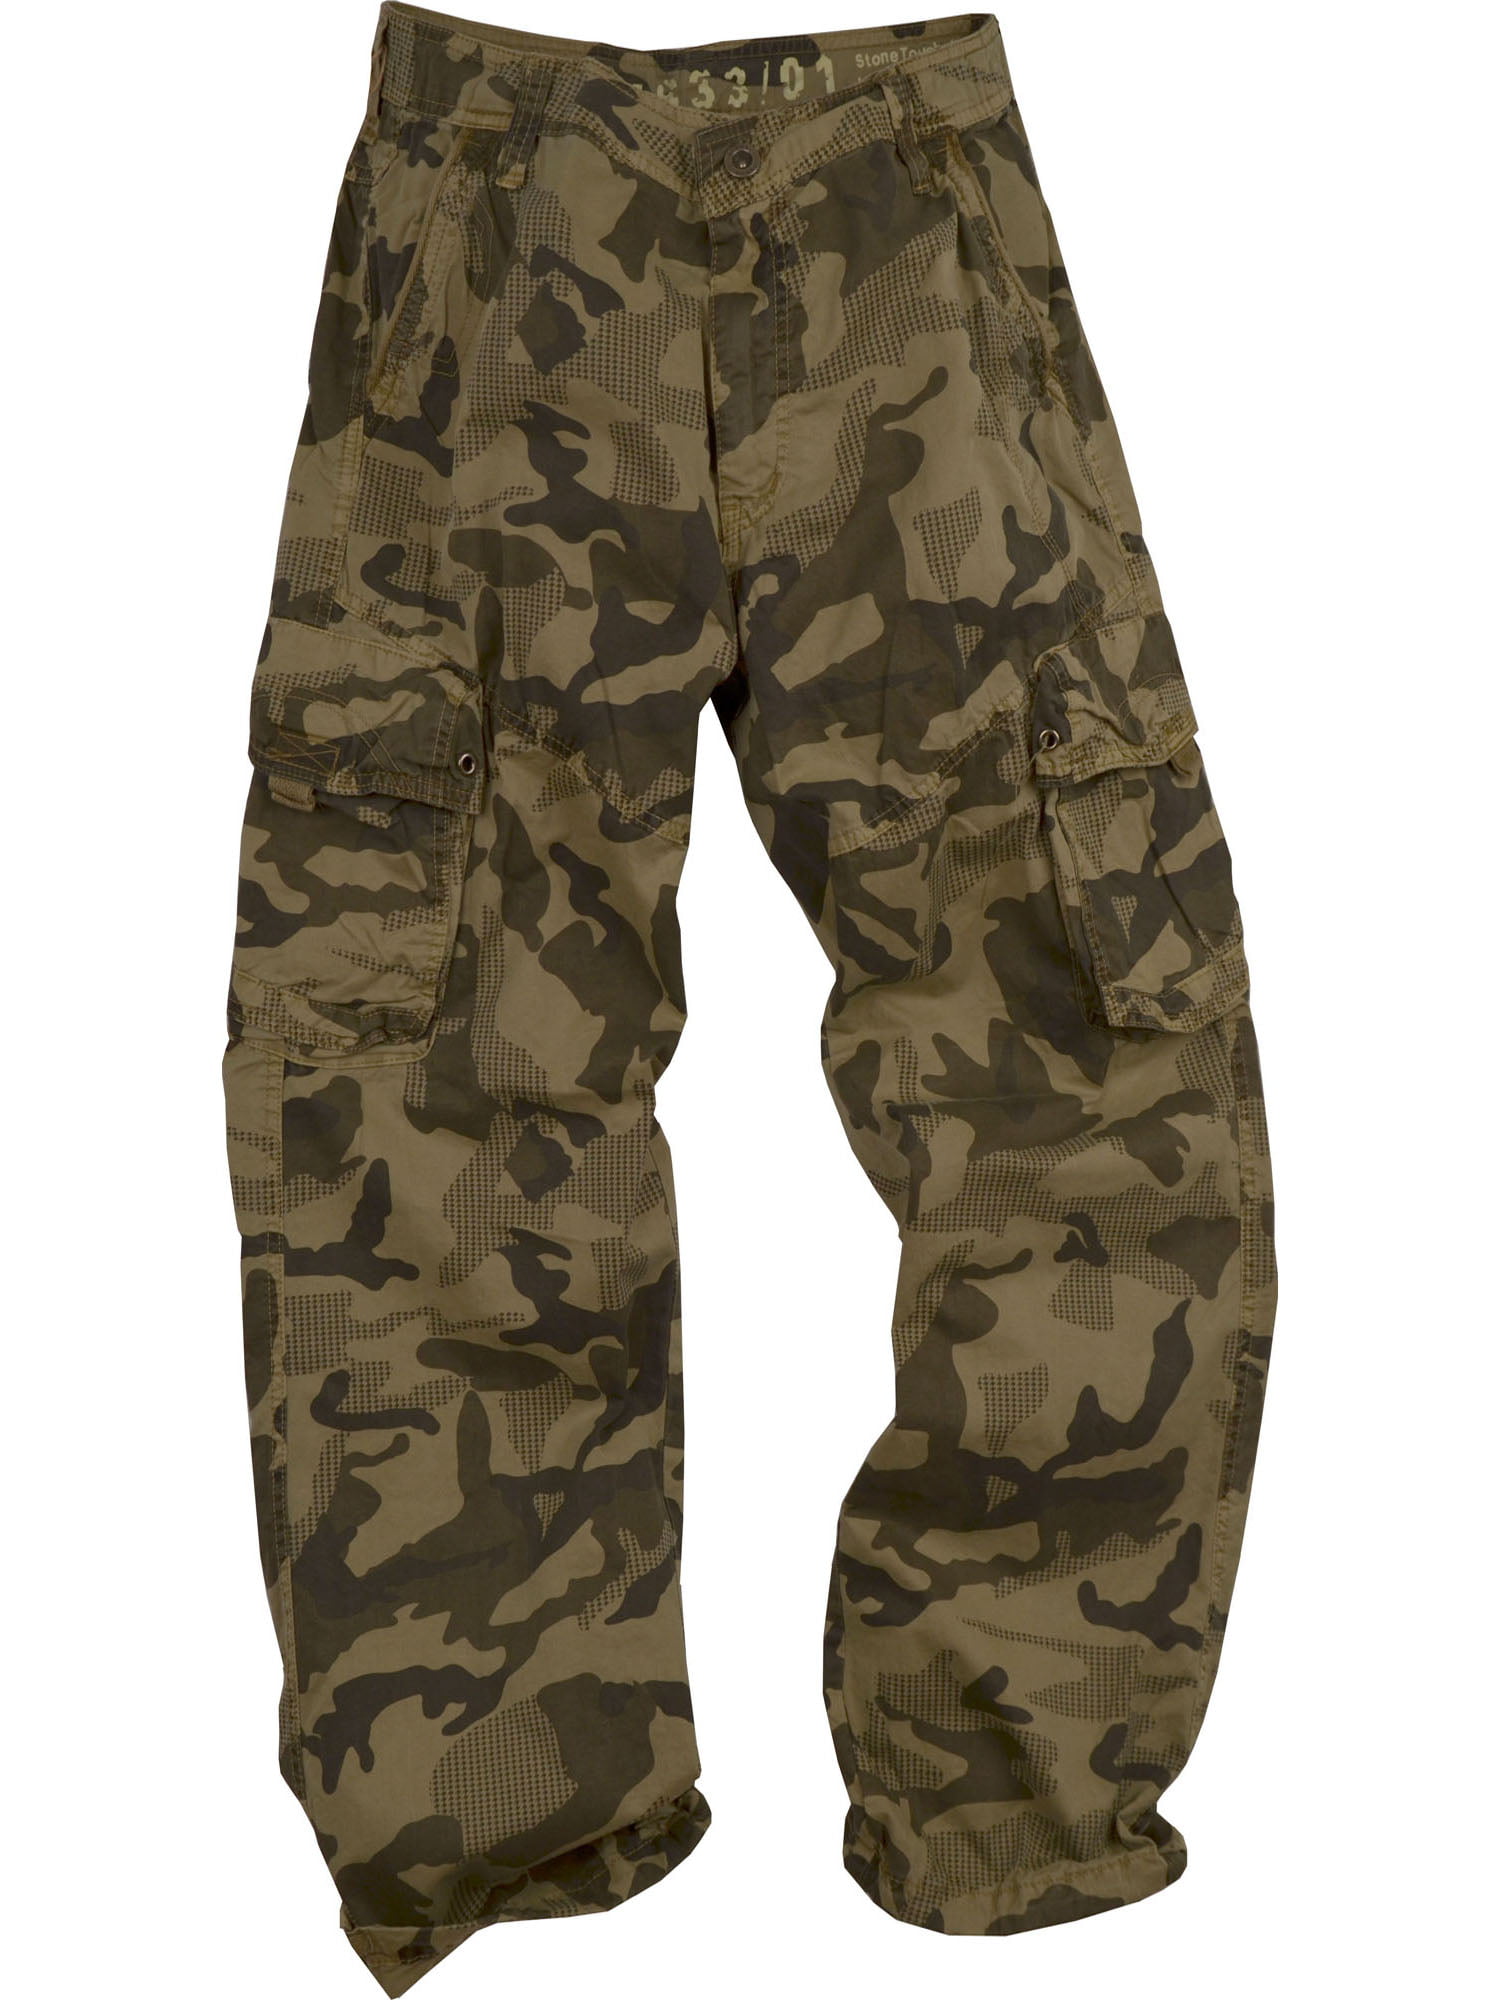 StoneTouch #28C1 Men's Military-Style Cargo Pants 44x32--Khaki Camo ...